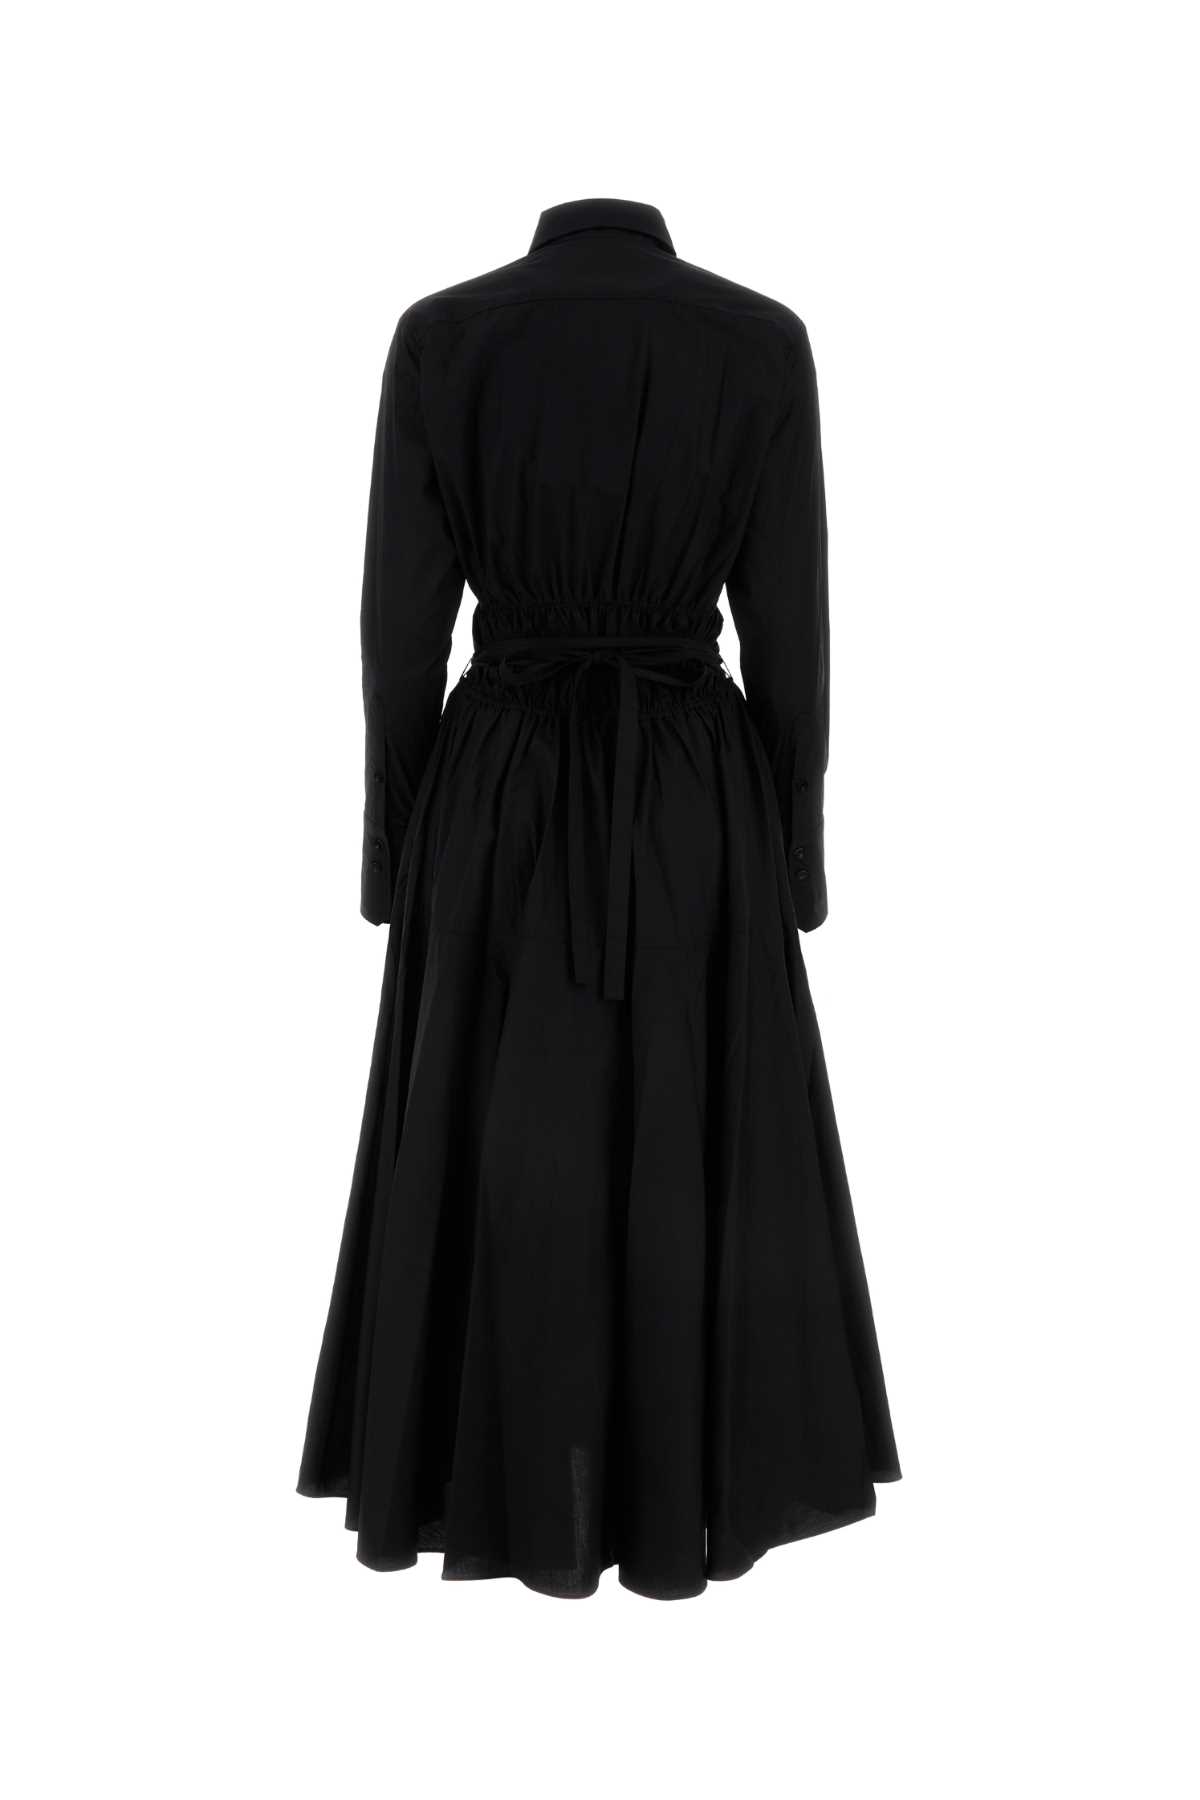 PATOU BLACK POPLIN SHIRT DRESS